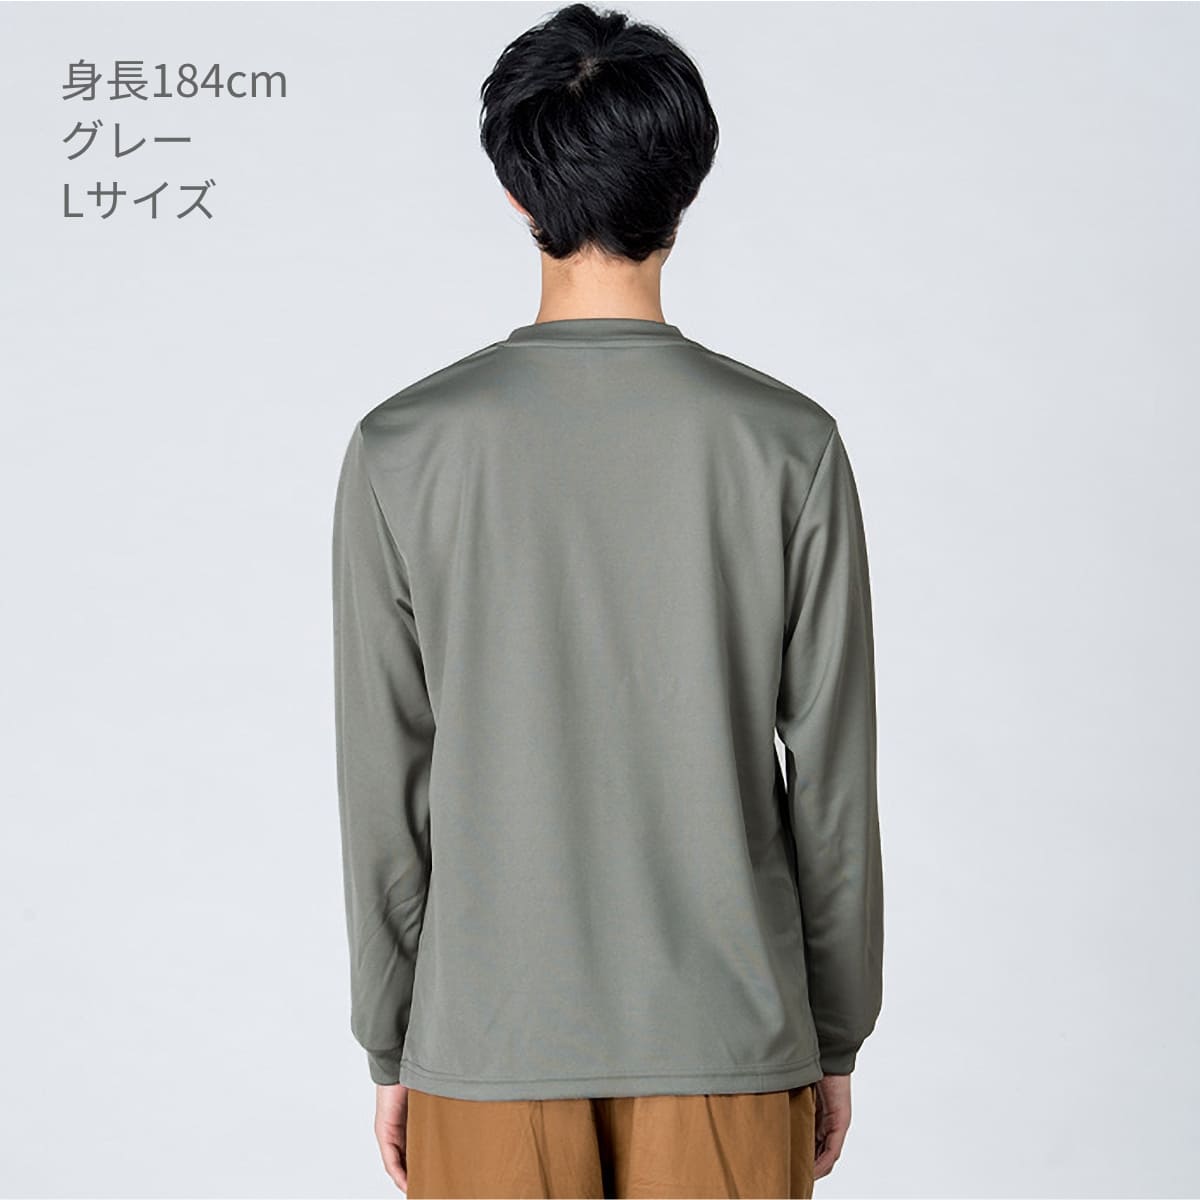 ニコちゃんマーク ロンＴ Tシャツ 長袖 ポケット